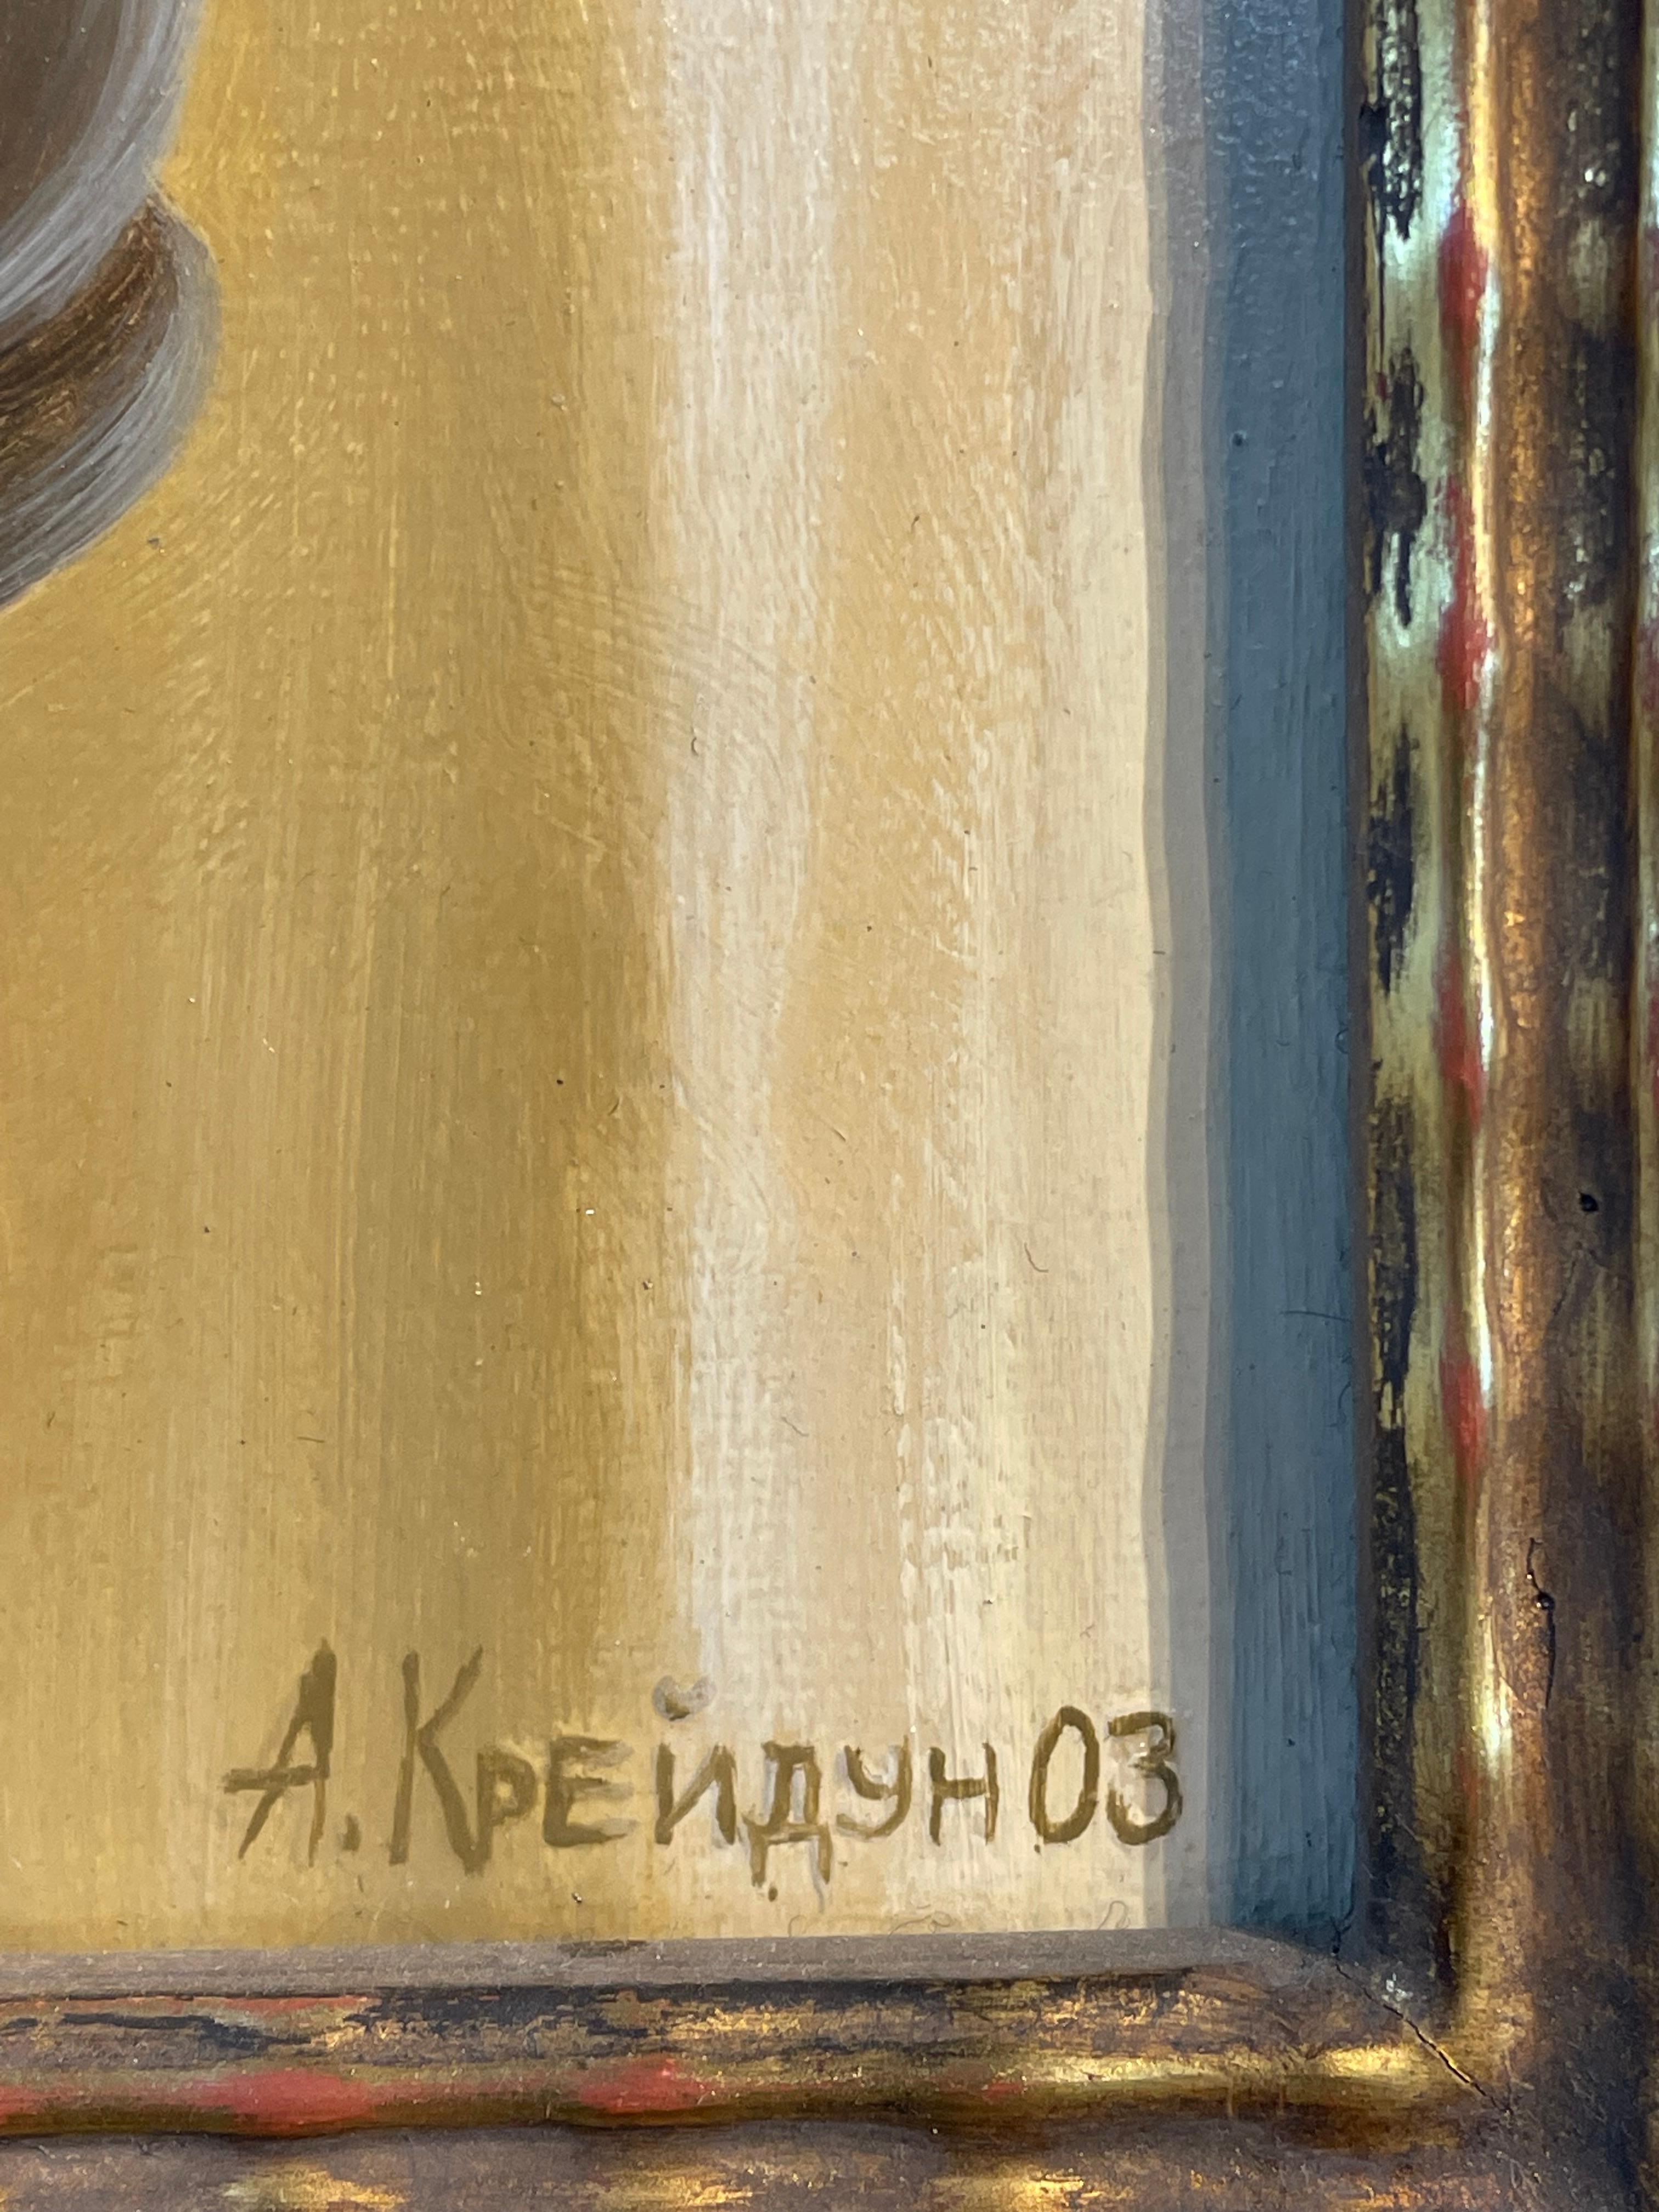 ROTE TRAUBEN, ROTWEIN 

Aleksei Kreydun hat die alten Meister studiert und ihre lange verlorenen Techniken wiederbelebt, indem er mehrere Schichten von Ölfarbe und Lack aufbaut, um eine Tiefe und einen Realismus in seinen Stillleben zu erreichen,